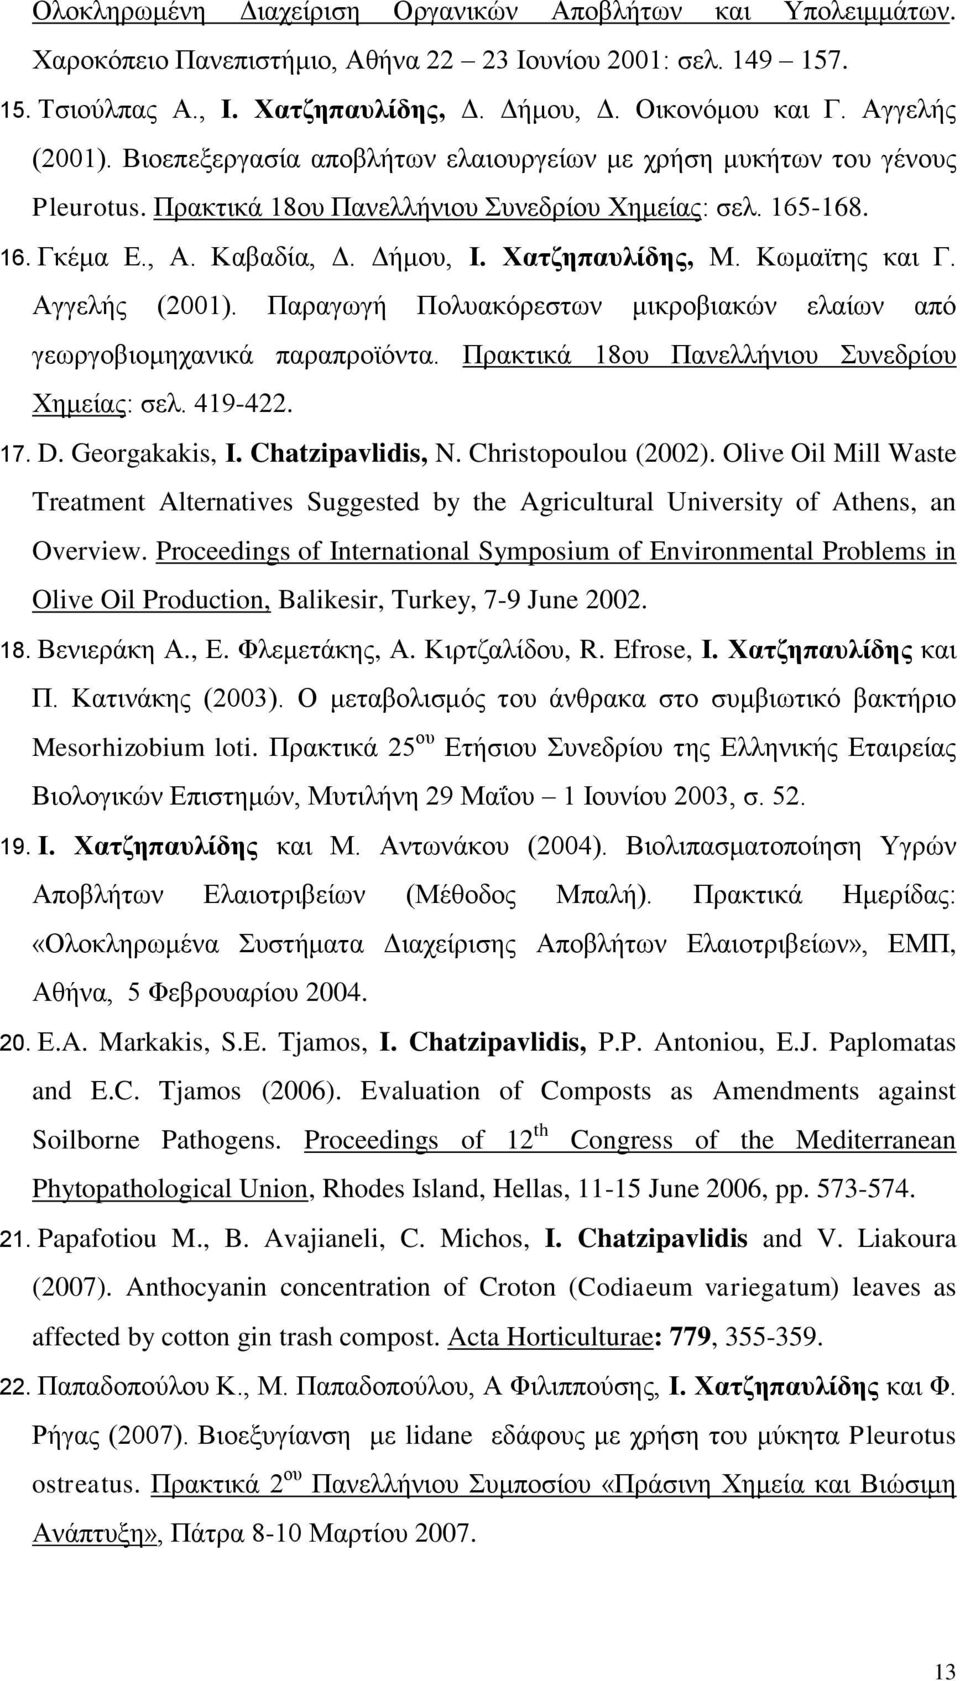 Χατζηπαυλίδης, Μ. Κωμαϊτης και Γ. Αγγελής (2001). Παραγωγή Πολυακόρεστων μικροβιακών ελαίων από γεωργοβιομηχανικά παραπροϊόντα. Πρακτικά 18ου Πανελλήνιου Συνεδρίου Χημείας: σελ. 419-422. 17. D.